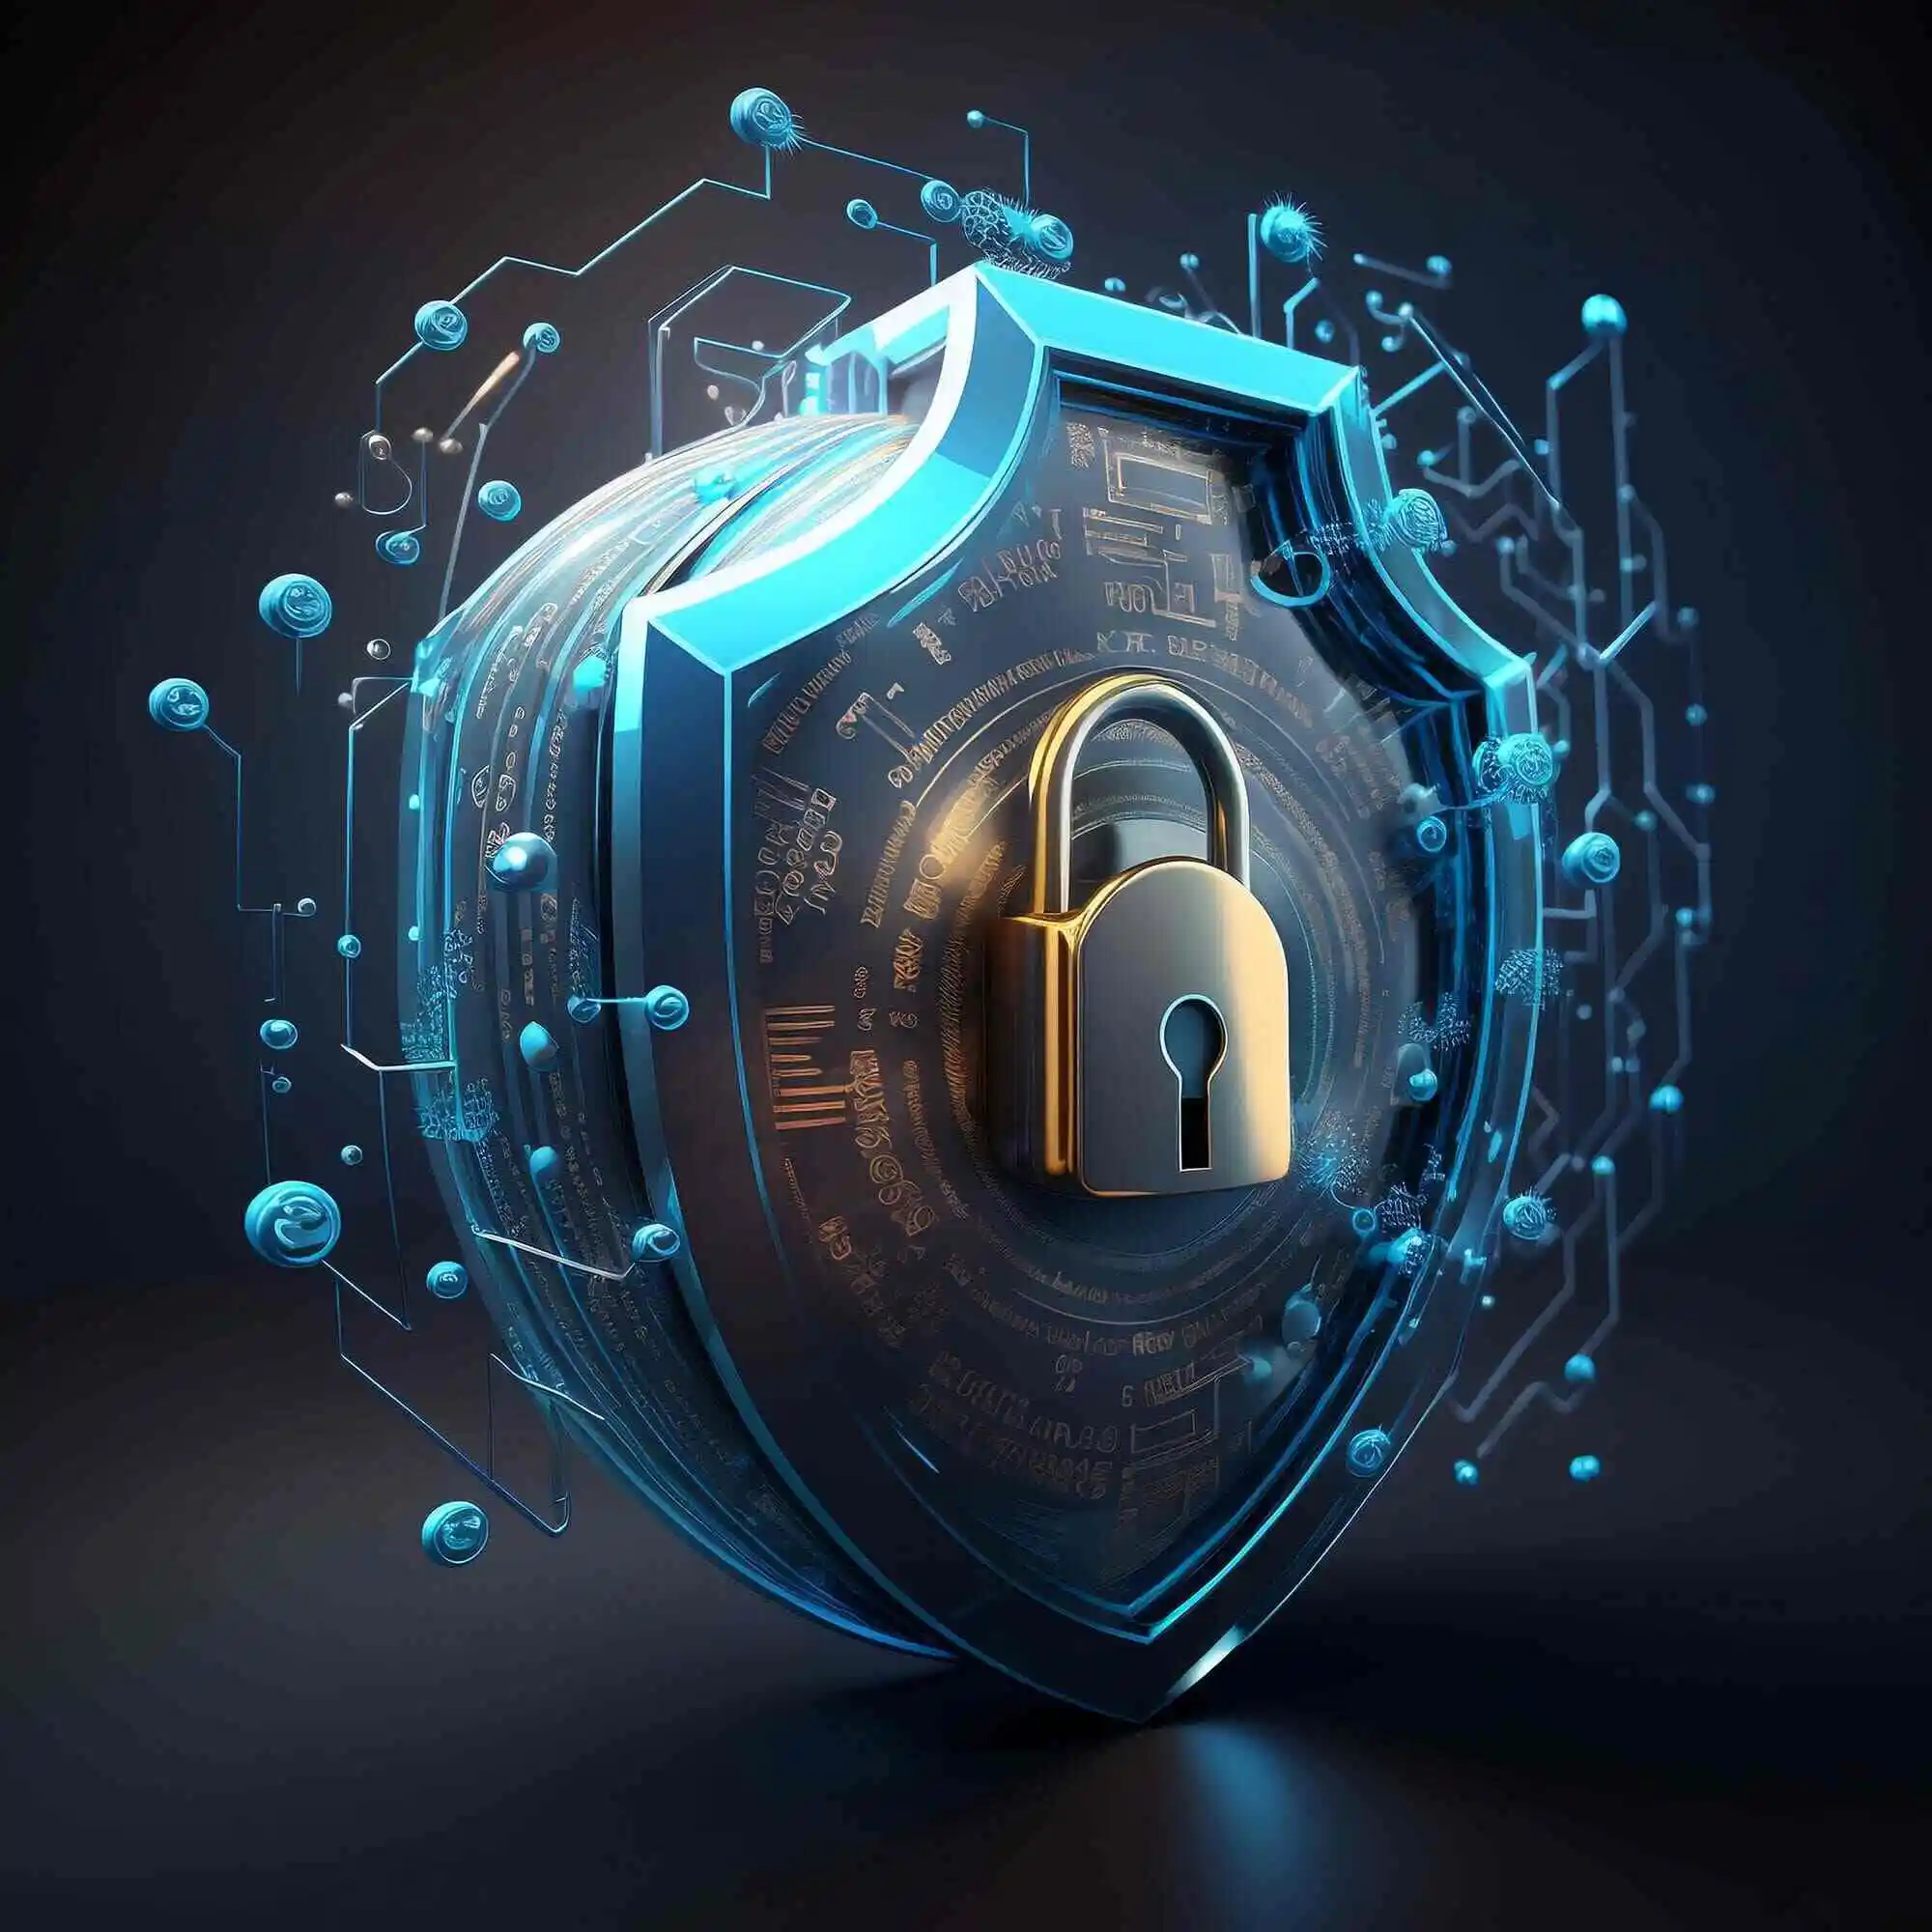 Escudo digital tridimensional com um cadeado dourado simbolizando segurança cibernética e proteção de dados